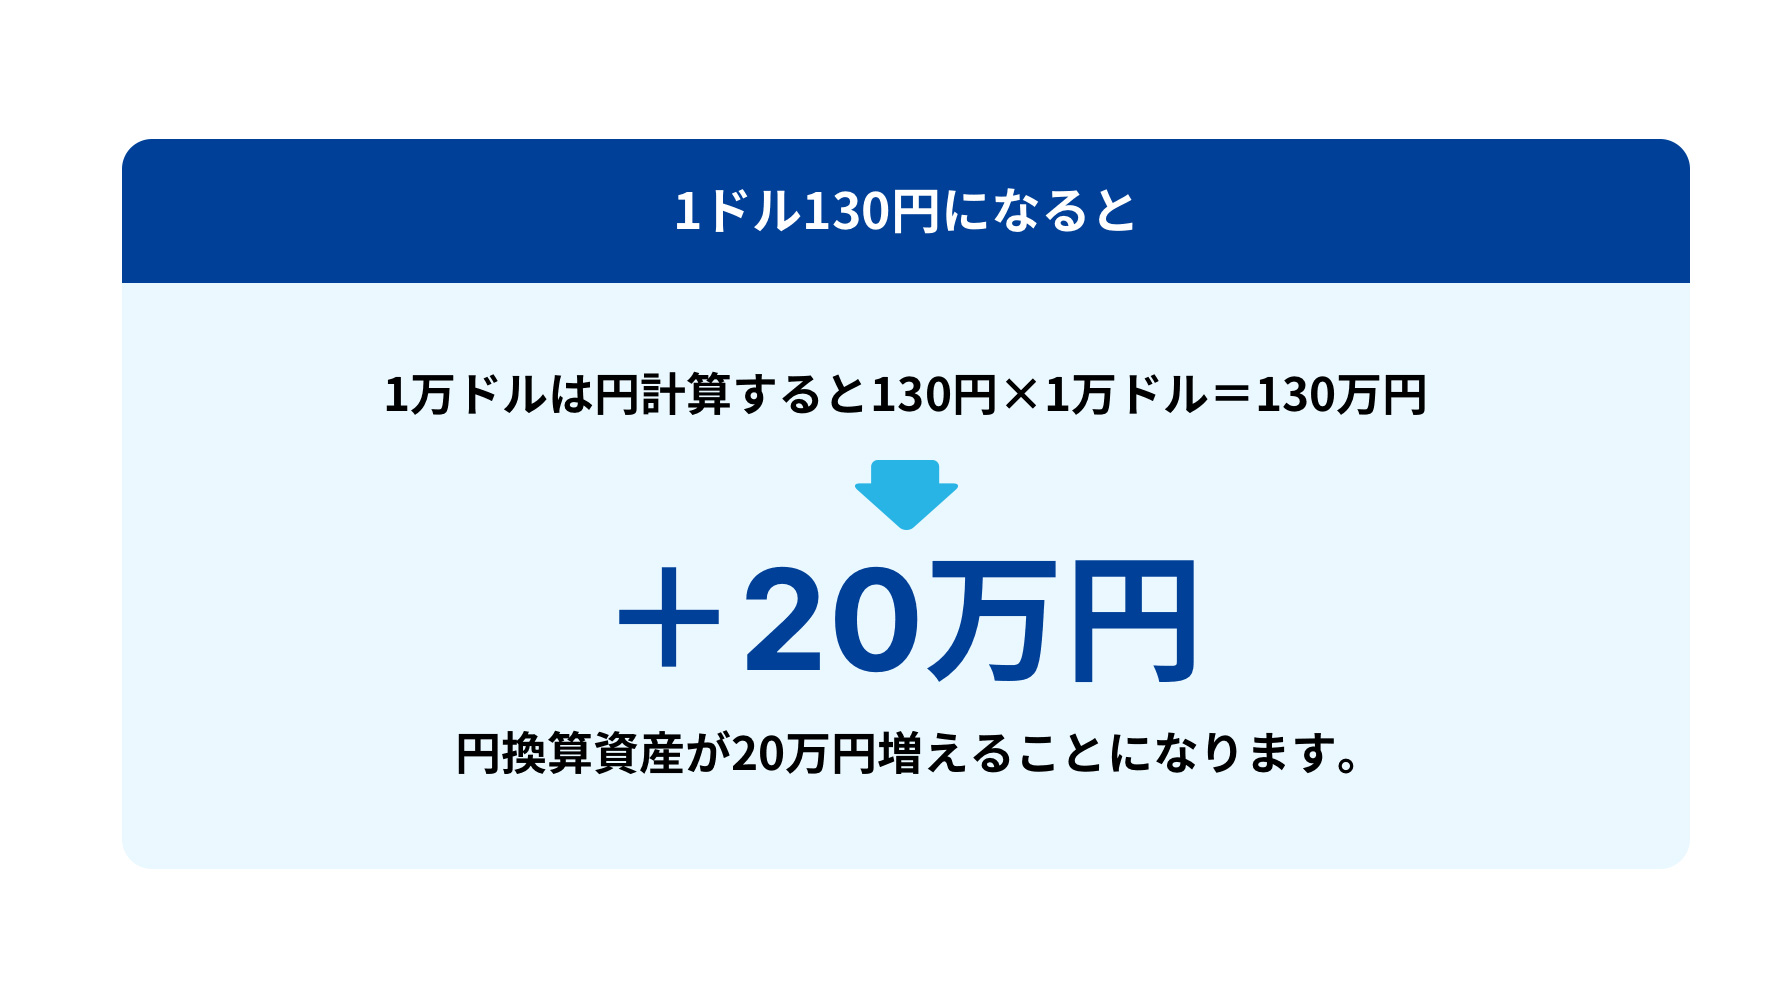 1ドル130円になると、1万ドルは円計算すると130円×1万ドル＝130万円。つまり＋20万円。円換算資産が20万円増えることになります。